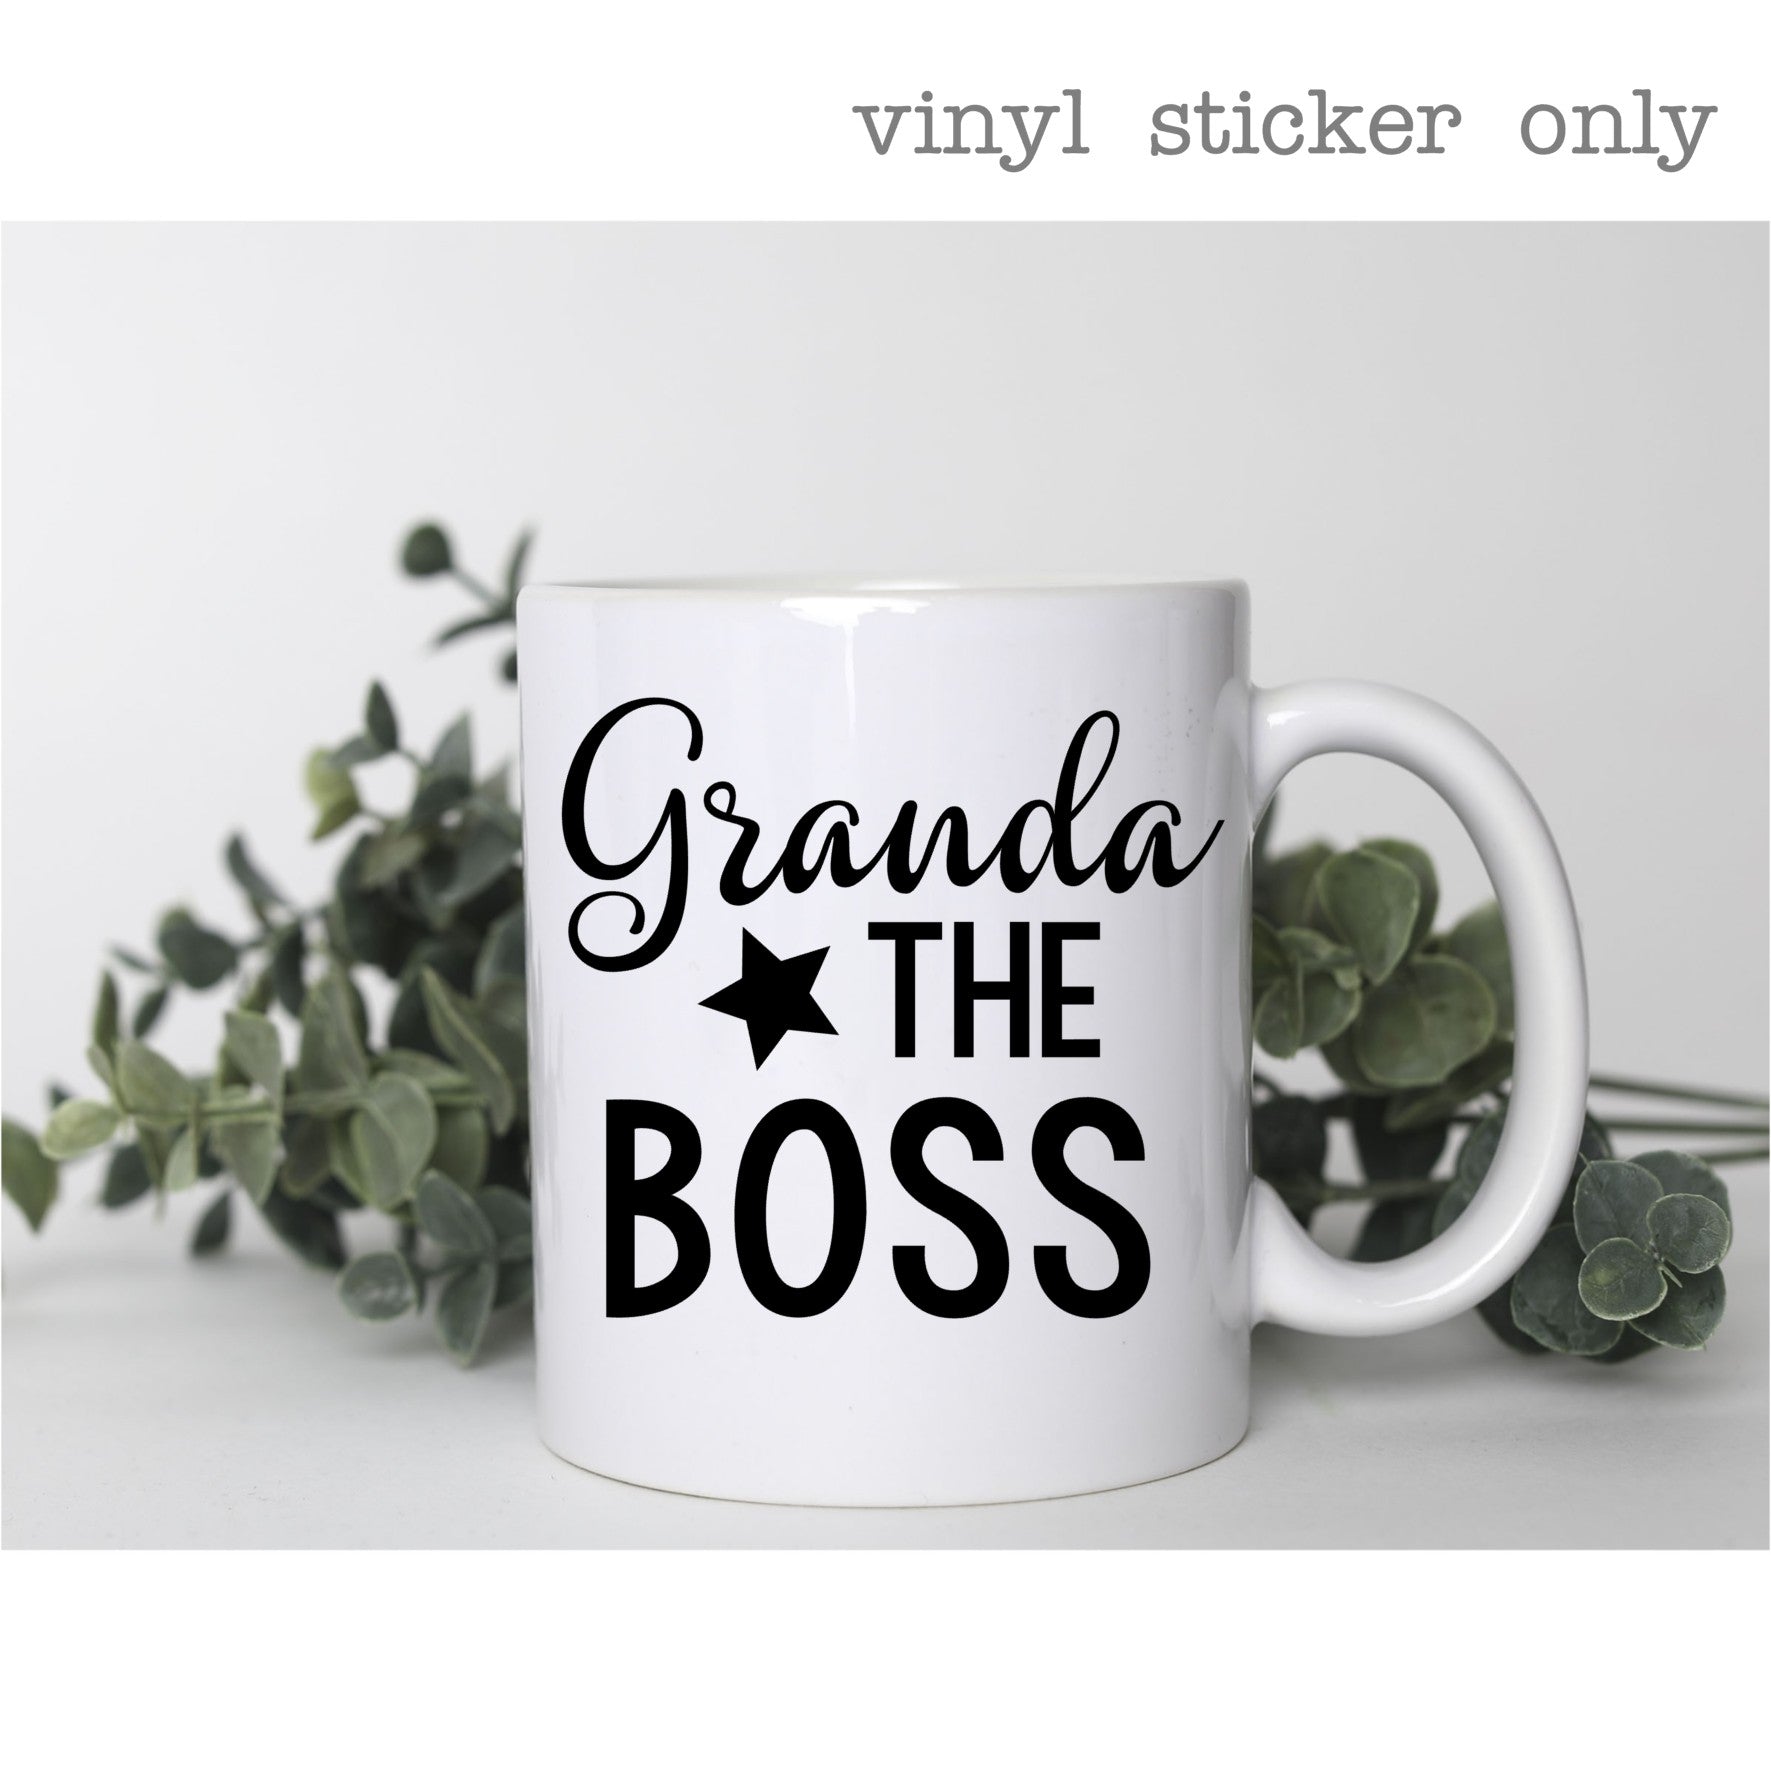 Granda The Boss | Novelty Sticker | Mug Sticker ONLY | Make your own gift